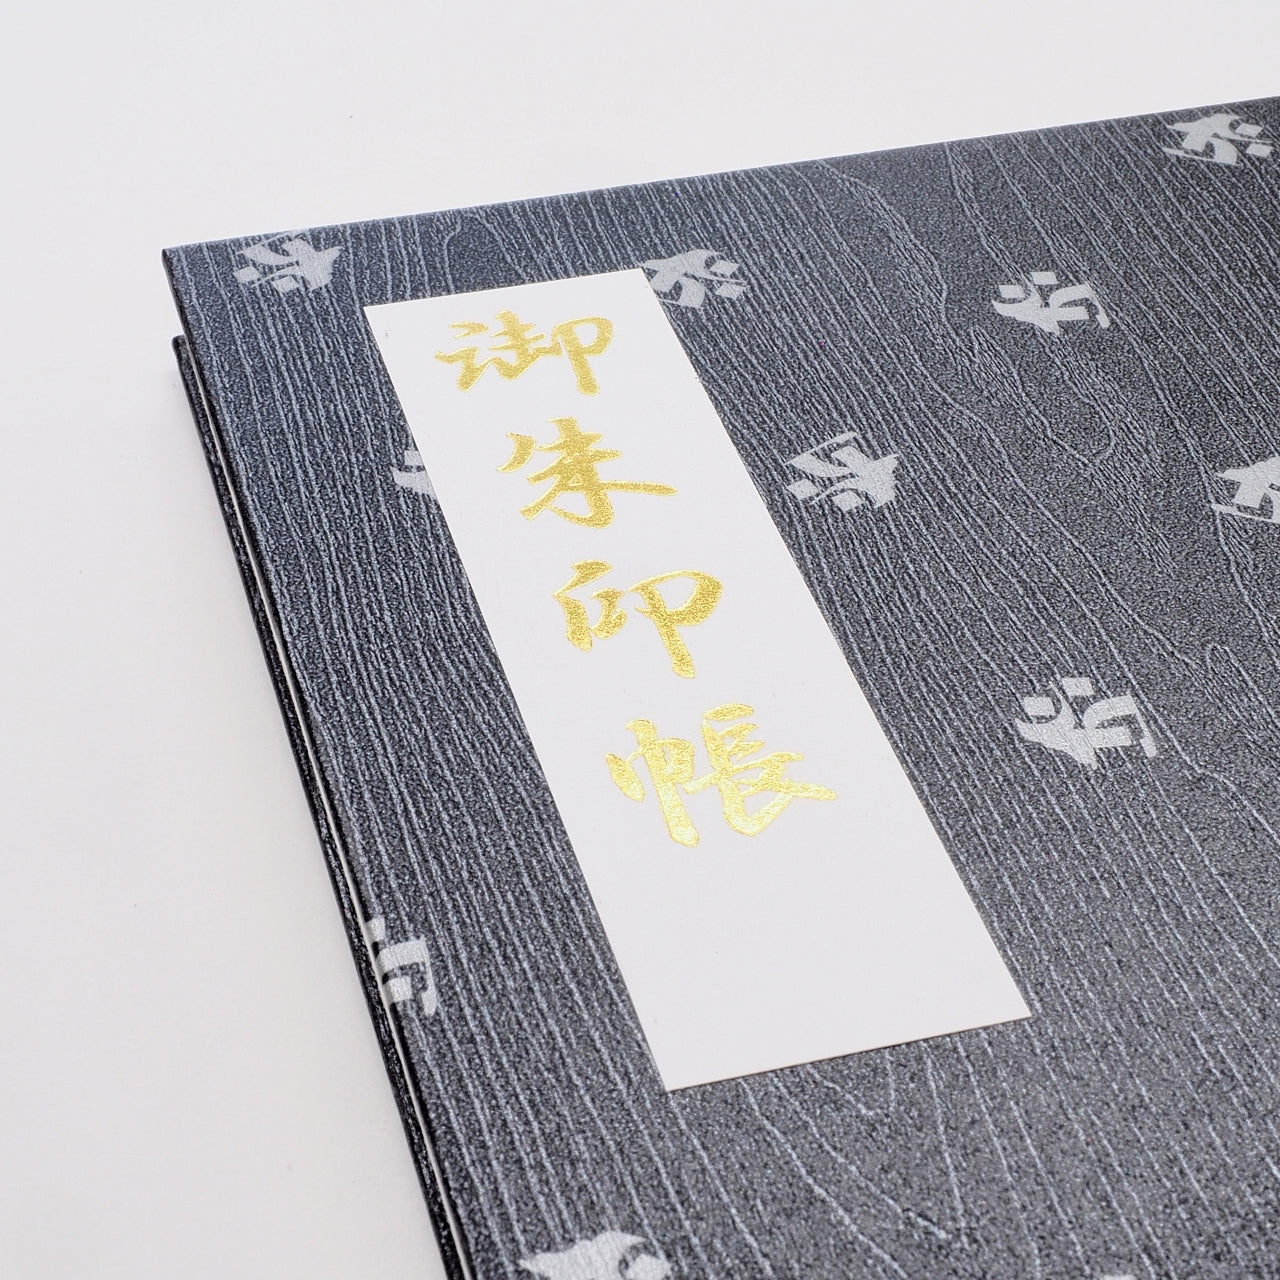 Goshuin book "Rinzen" flyer Sanskrit character Kokuzo Bodhisattva